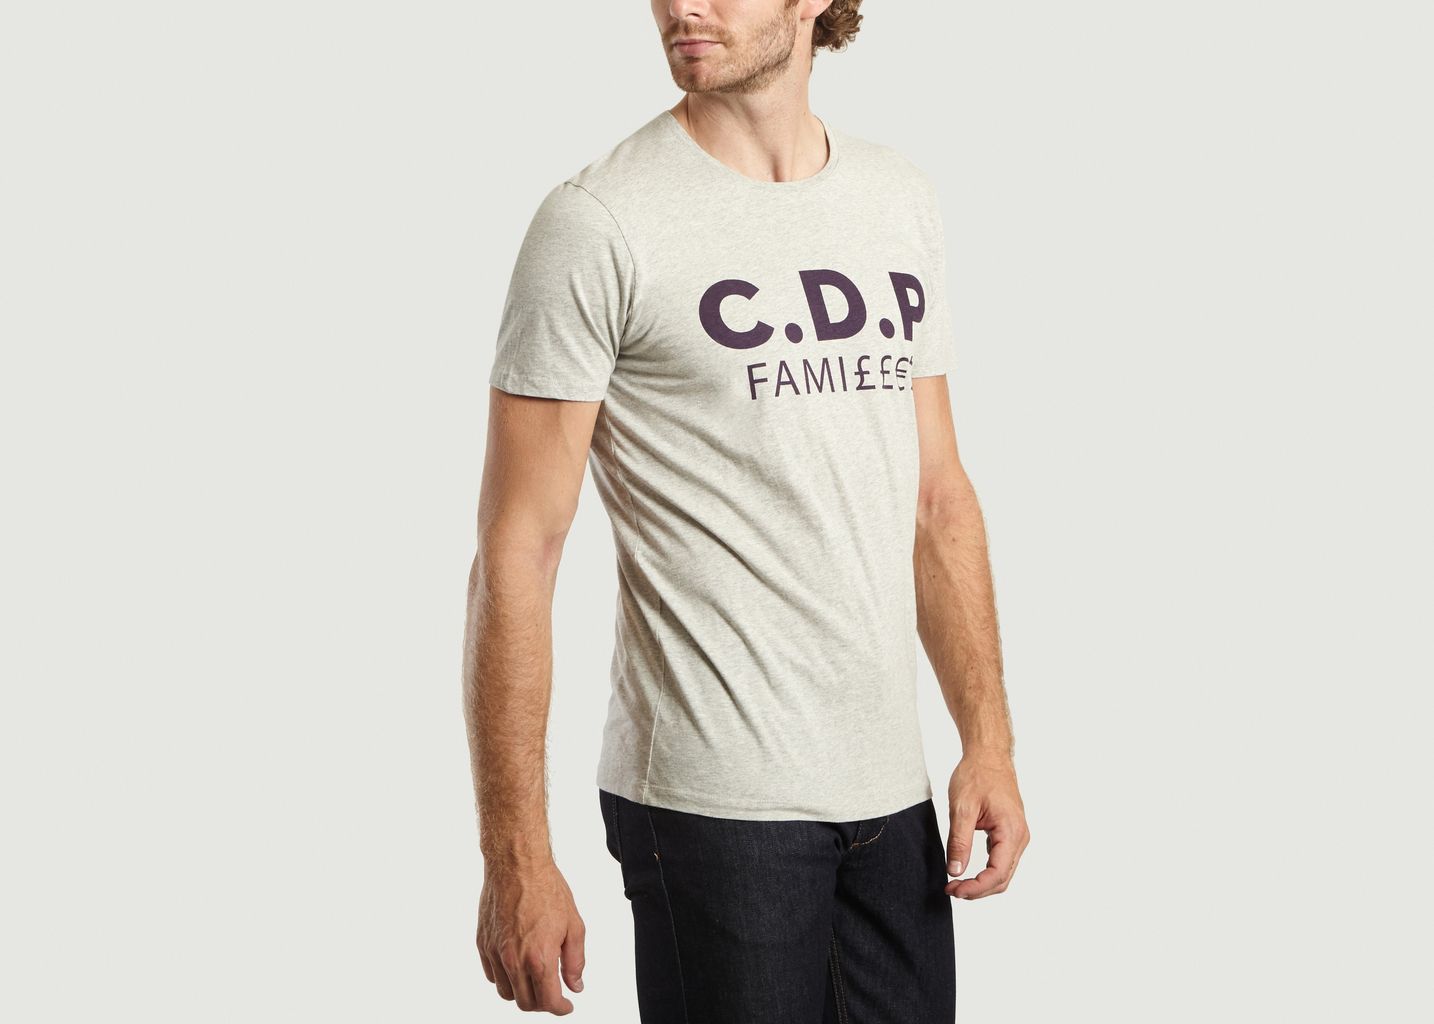 CDP Familles T-shirt - Commune de Paris